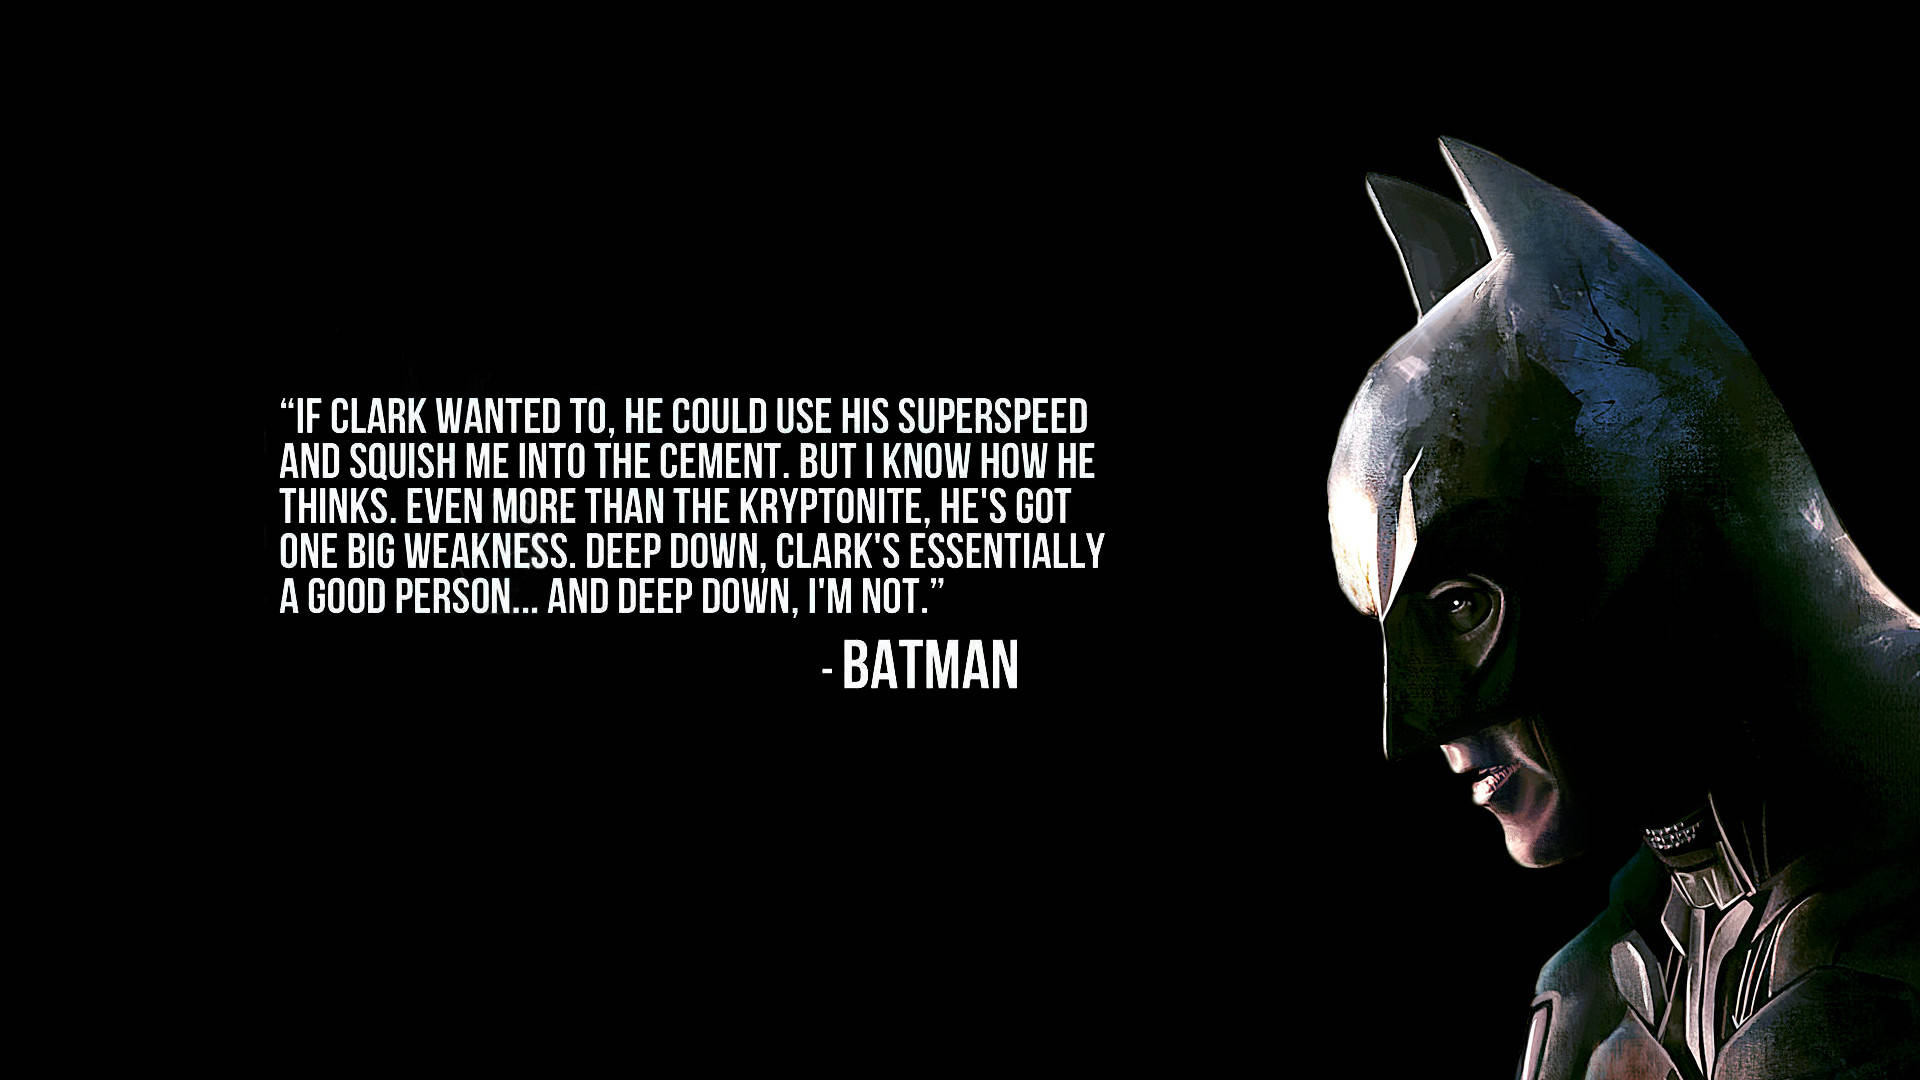 Batman Quotes About Clark